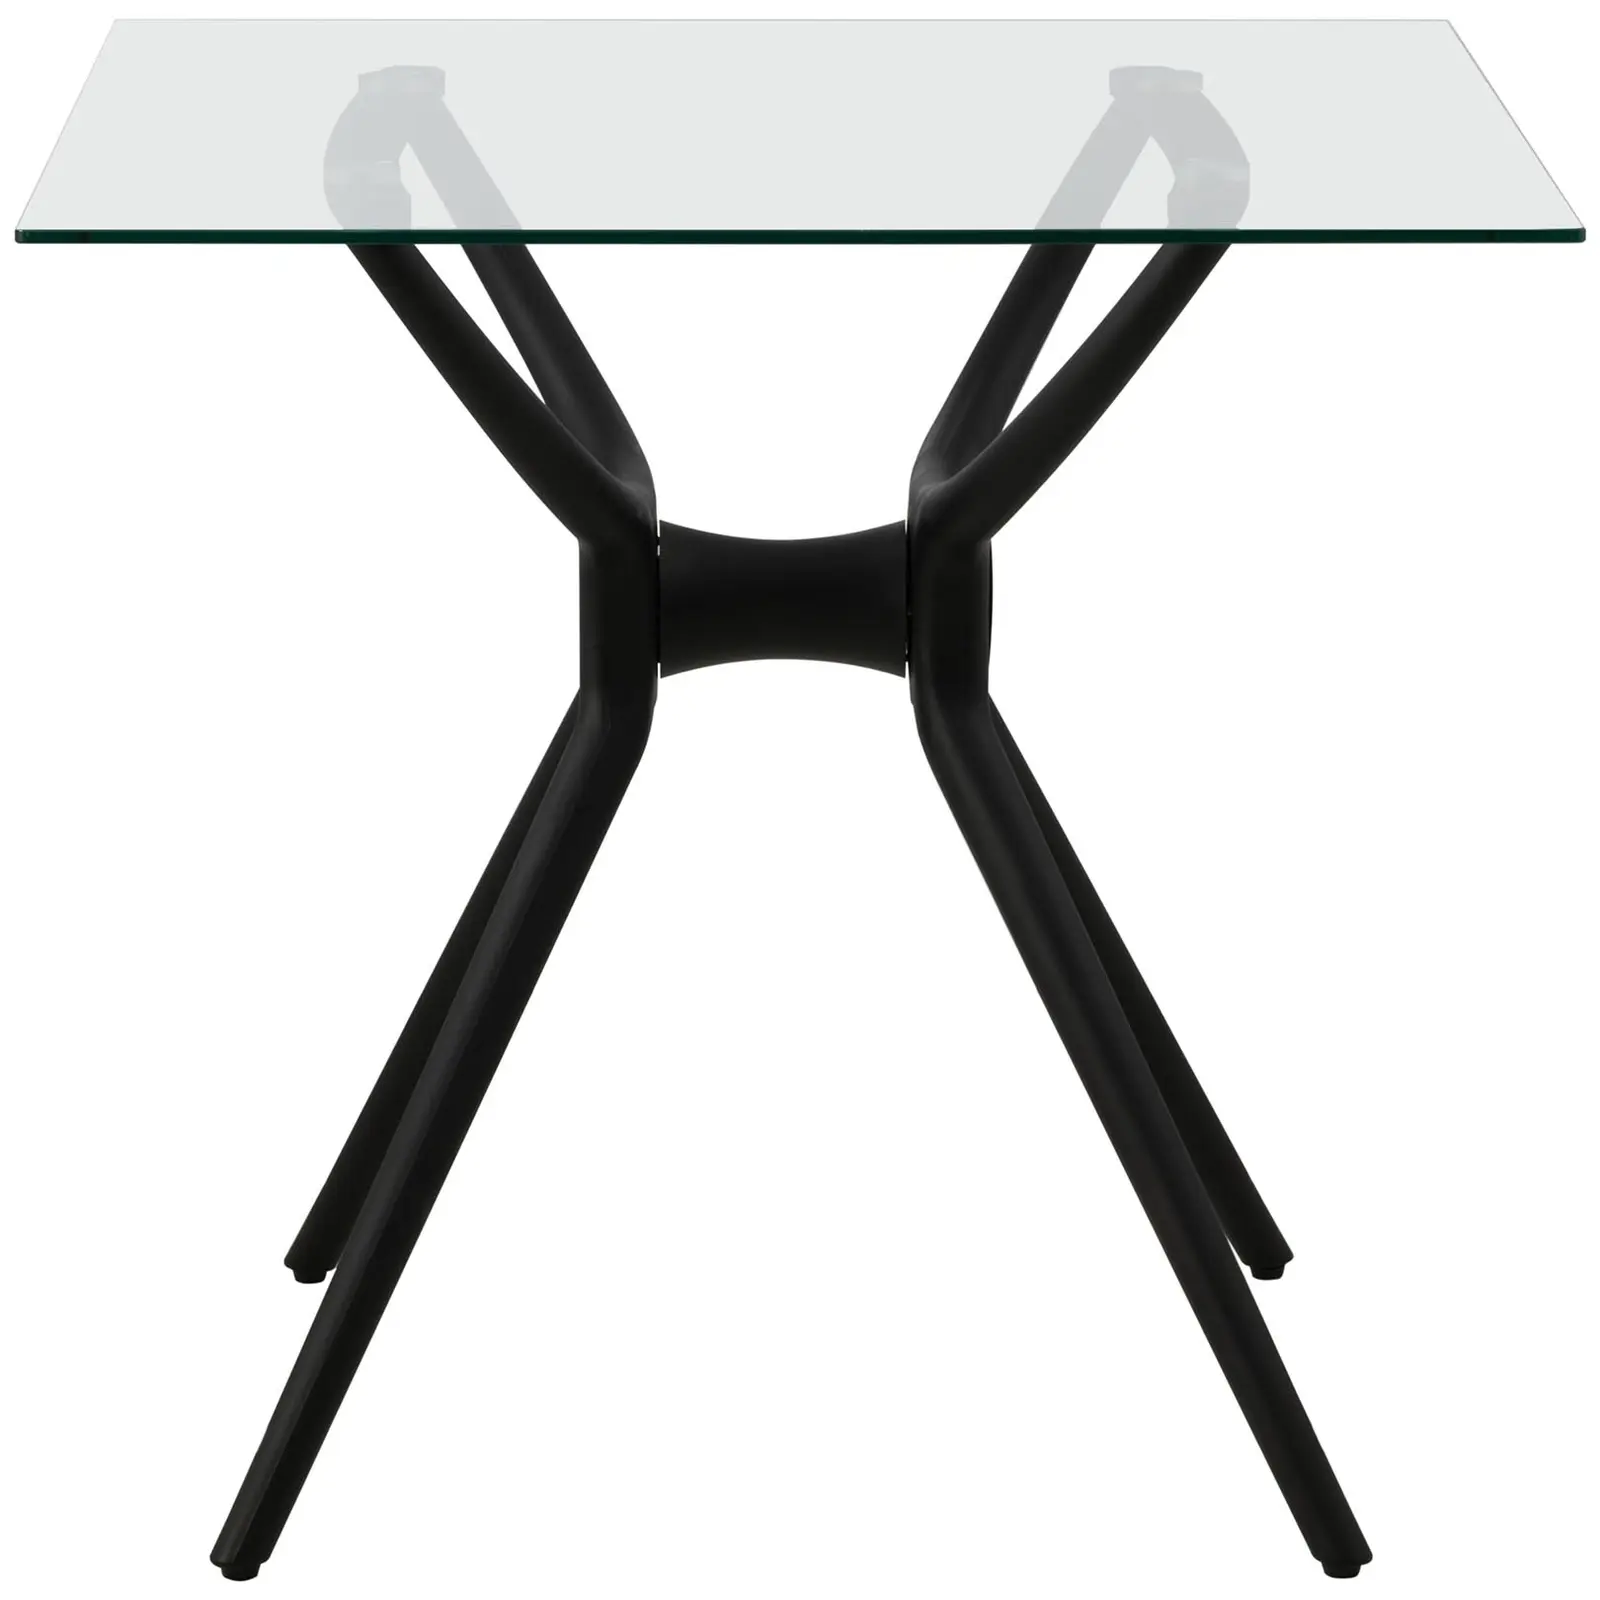 Stół - kwadratowy - 80 x 80 cm - szklany blat